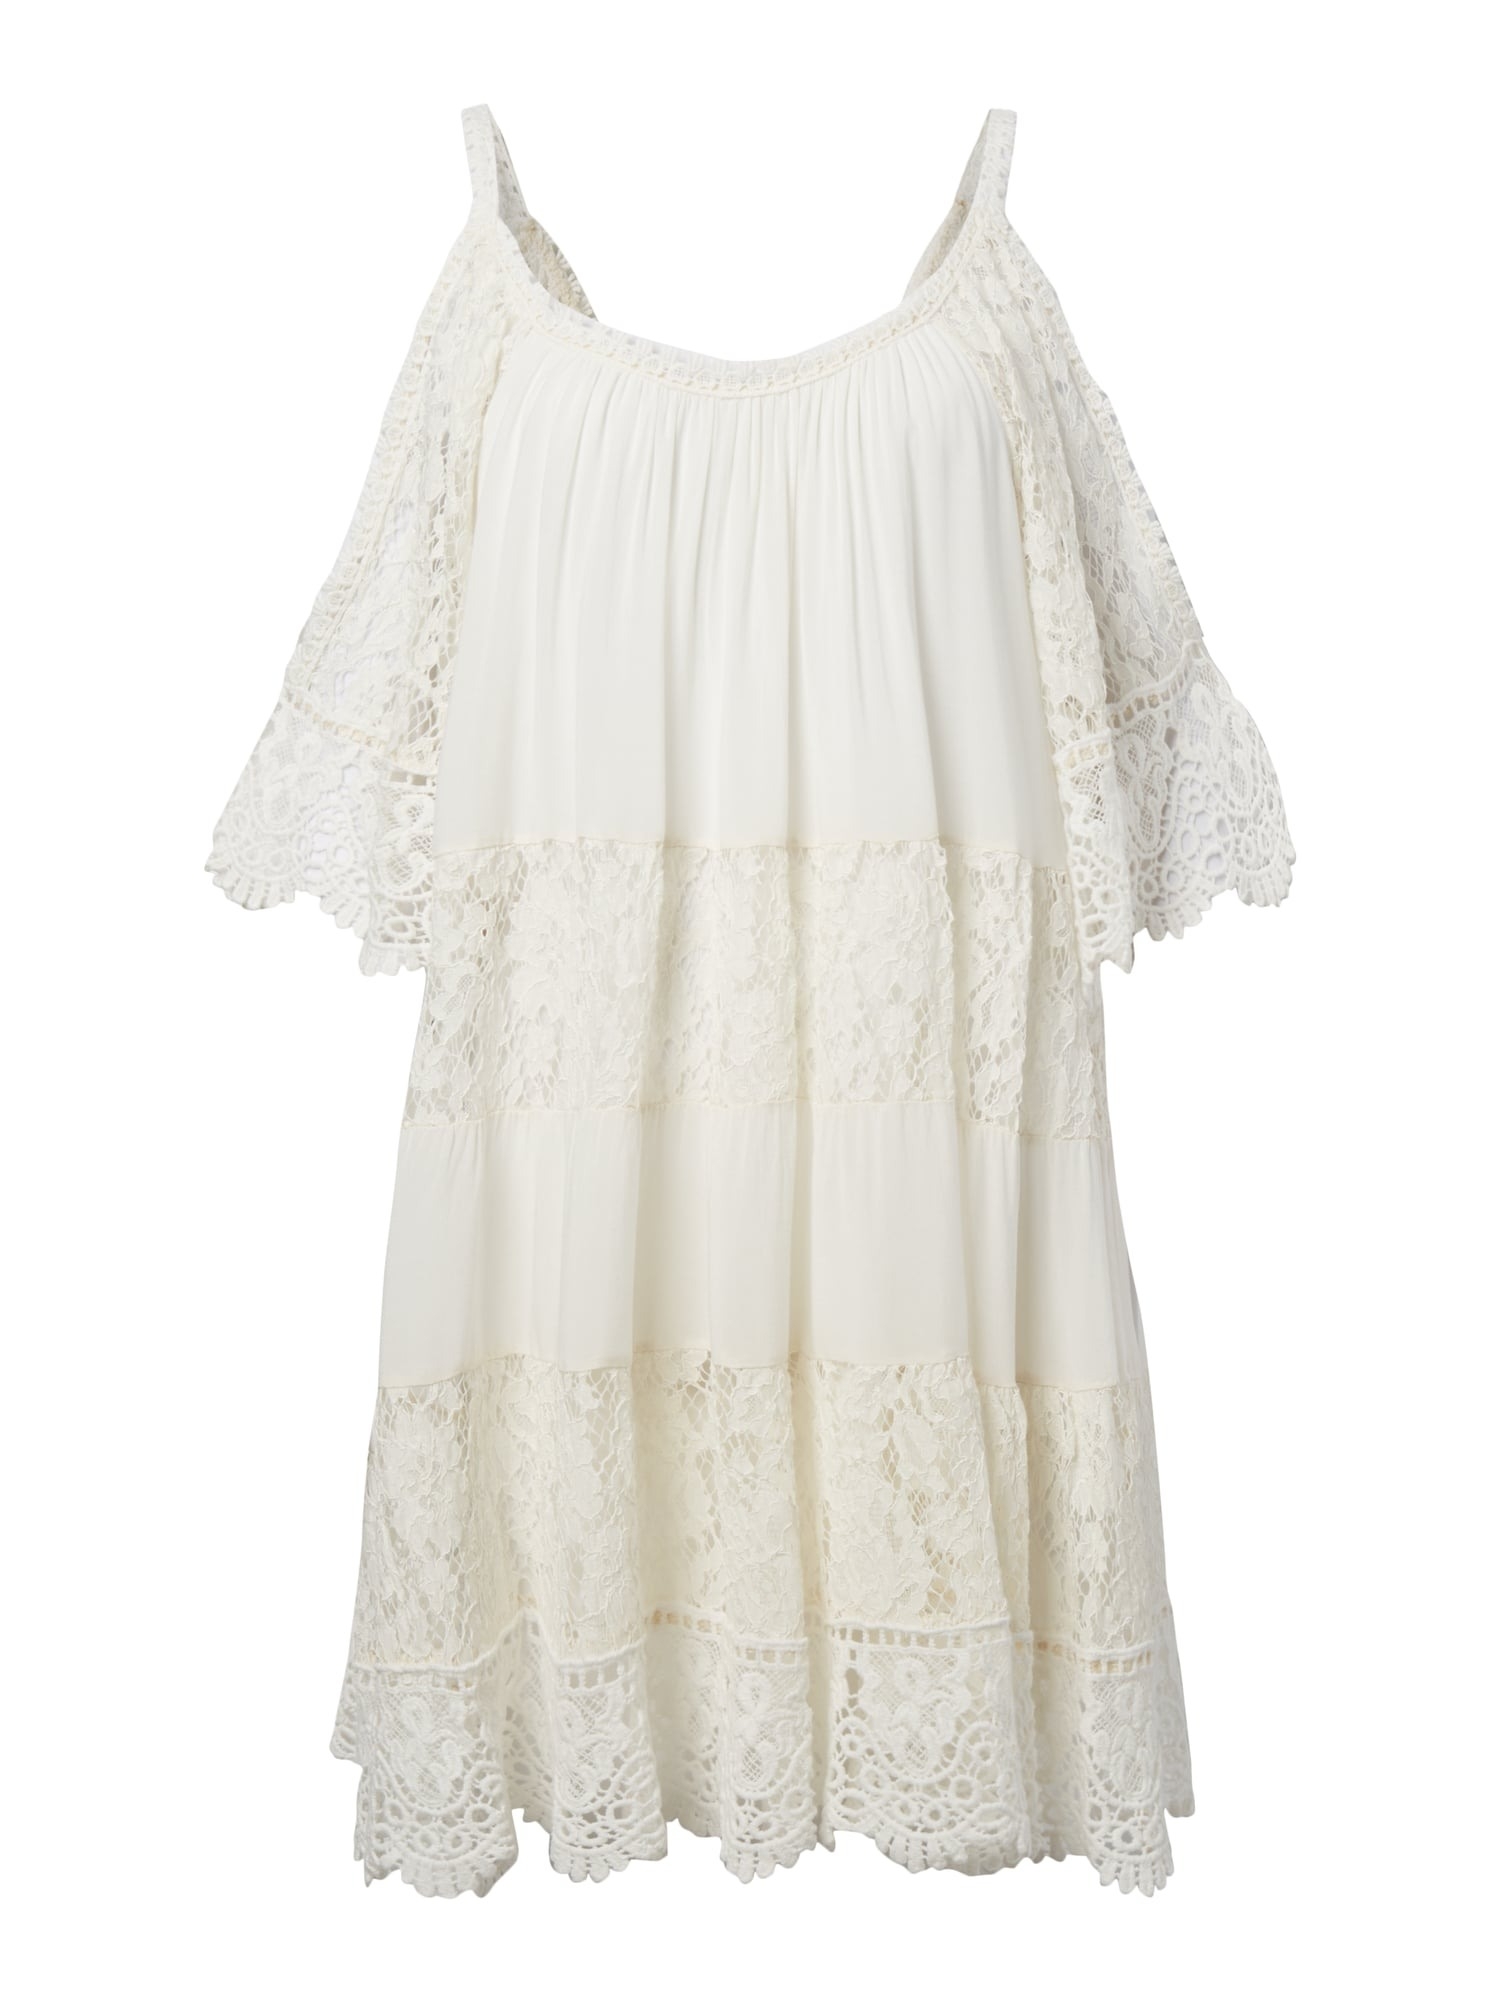 13 Genial Kleid Weiß Spitze für 201915 Top Kleid Weiß Spitze Spezialgebiet